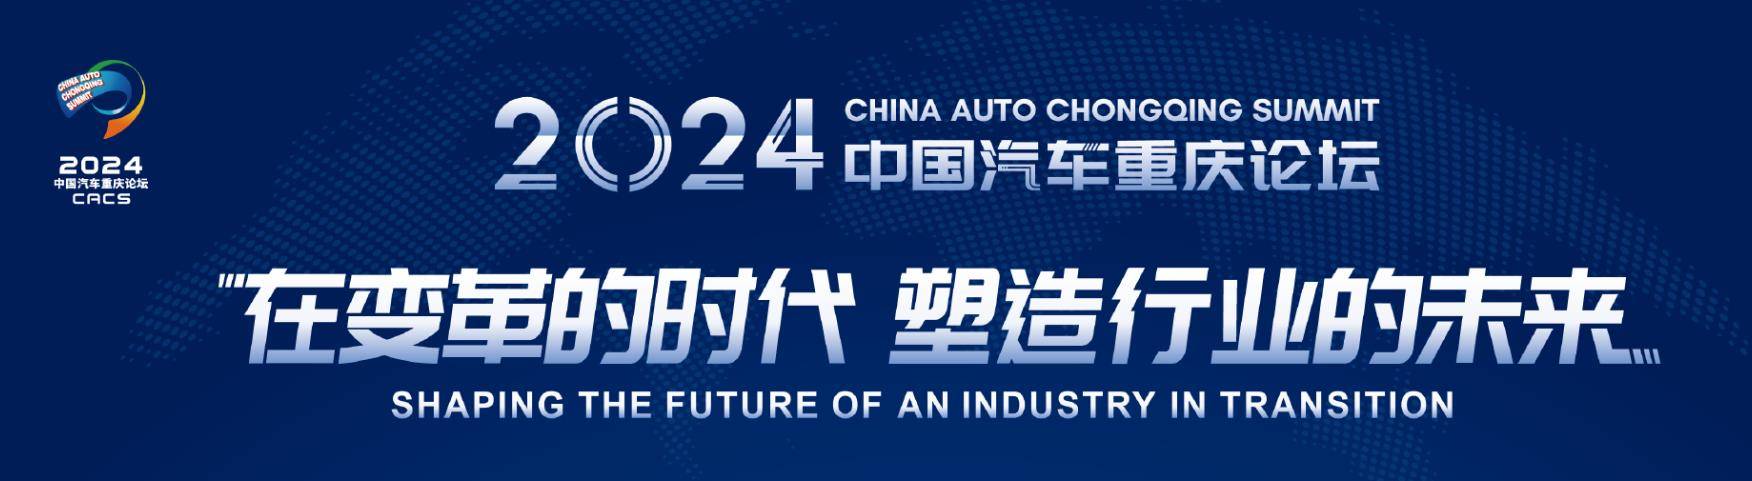 2024中国汽车重庆论坛:比亚迪打样新能源汽车内卷的正确姿势